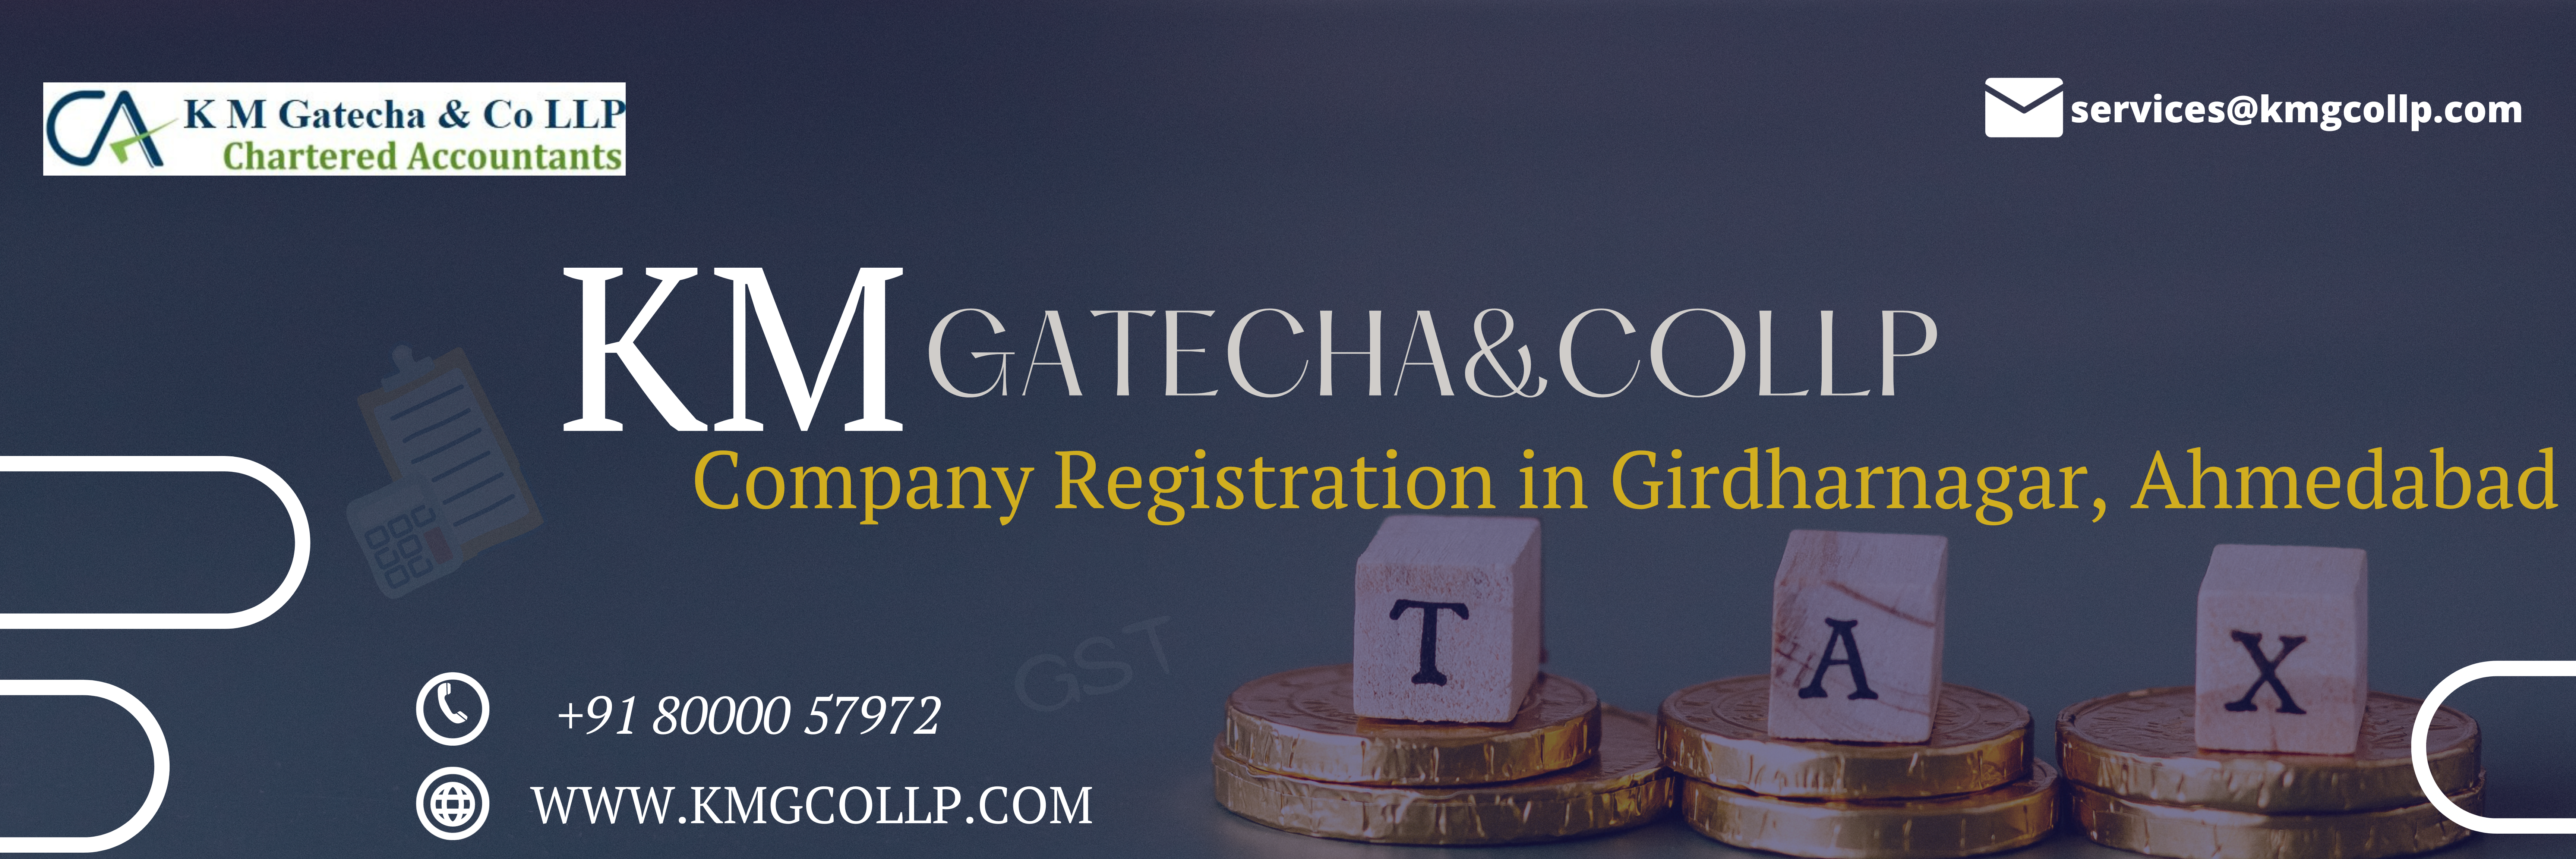 Company Registration in Girdharnagar